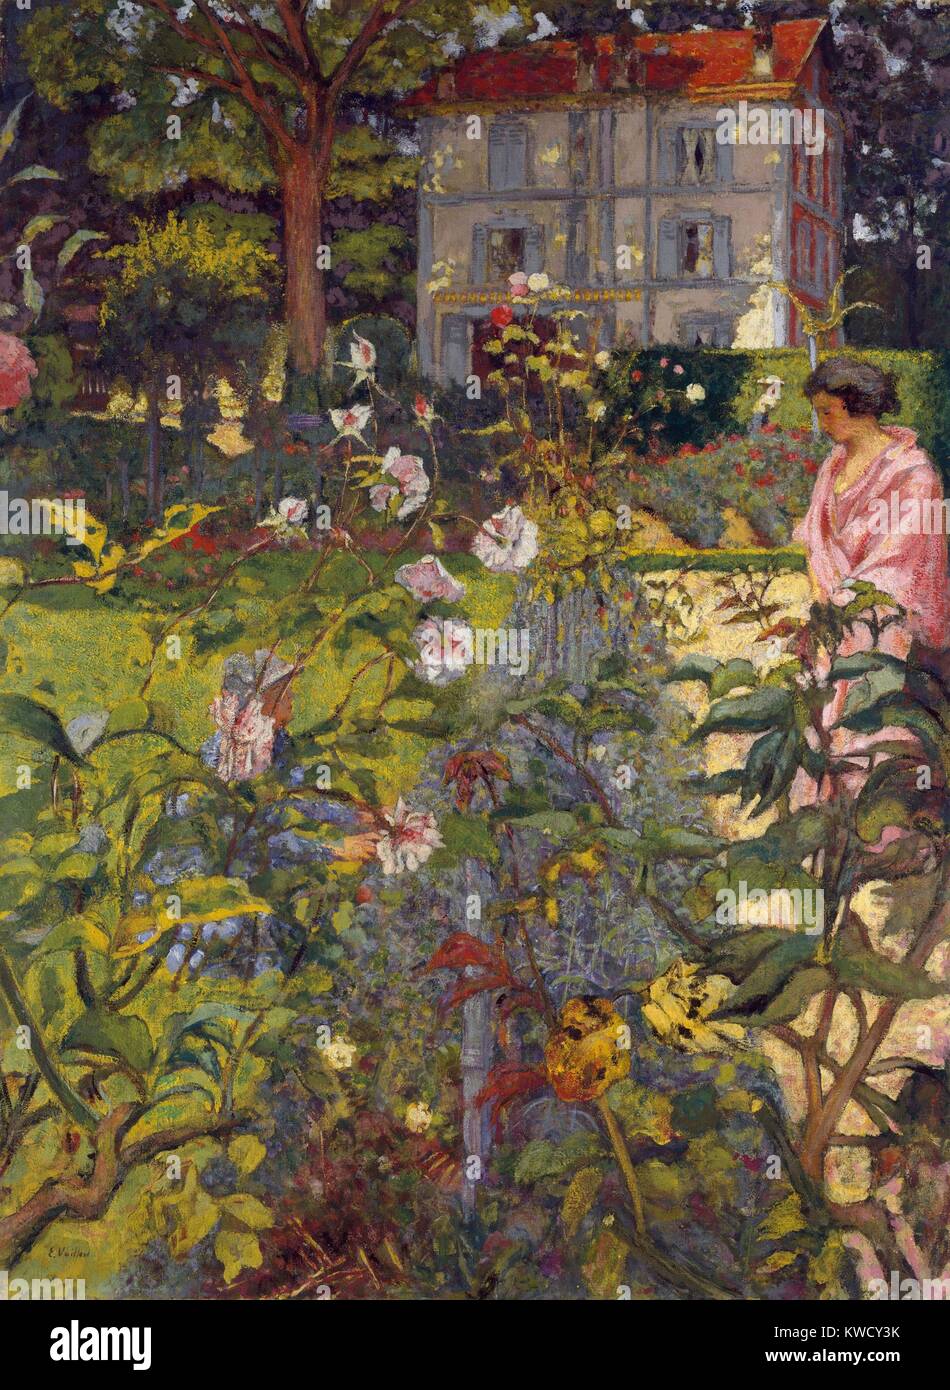 Jardin à Vaucresson, par Edouard Vuillard, 1920, peinture postimpressionniste. Les deux femmes presque perdu parmi les plantes sont Lucy Hessel et son cousin. La chambre apparaît clairement au-dessus de la riche complexité de la moitié inférieure des peintures (BSLOC 2017 5 103) Banque D'Images